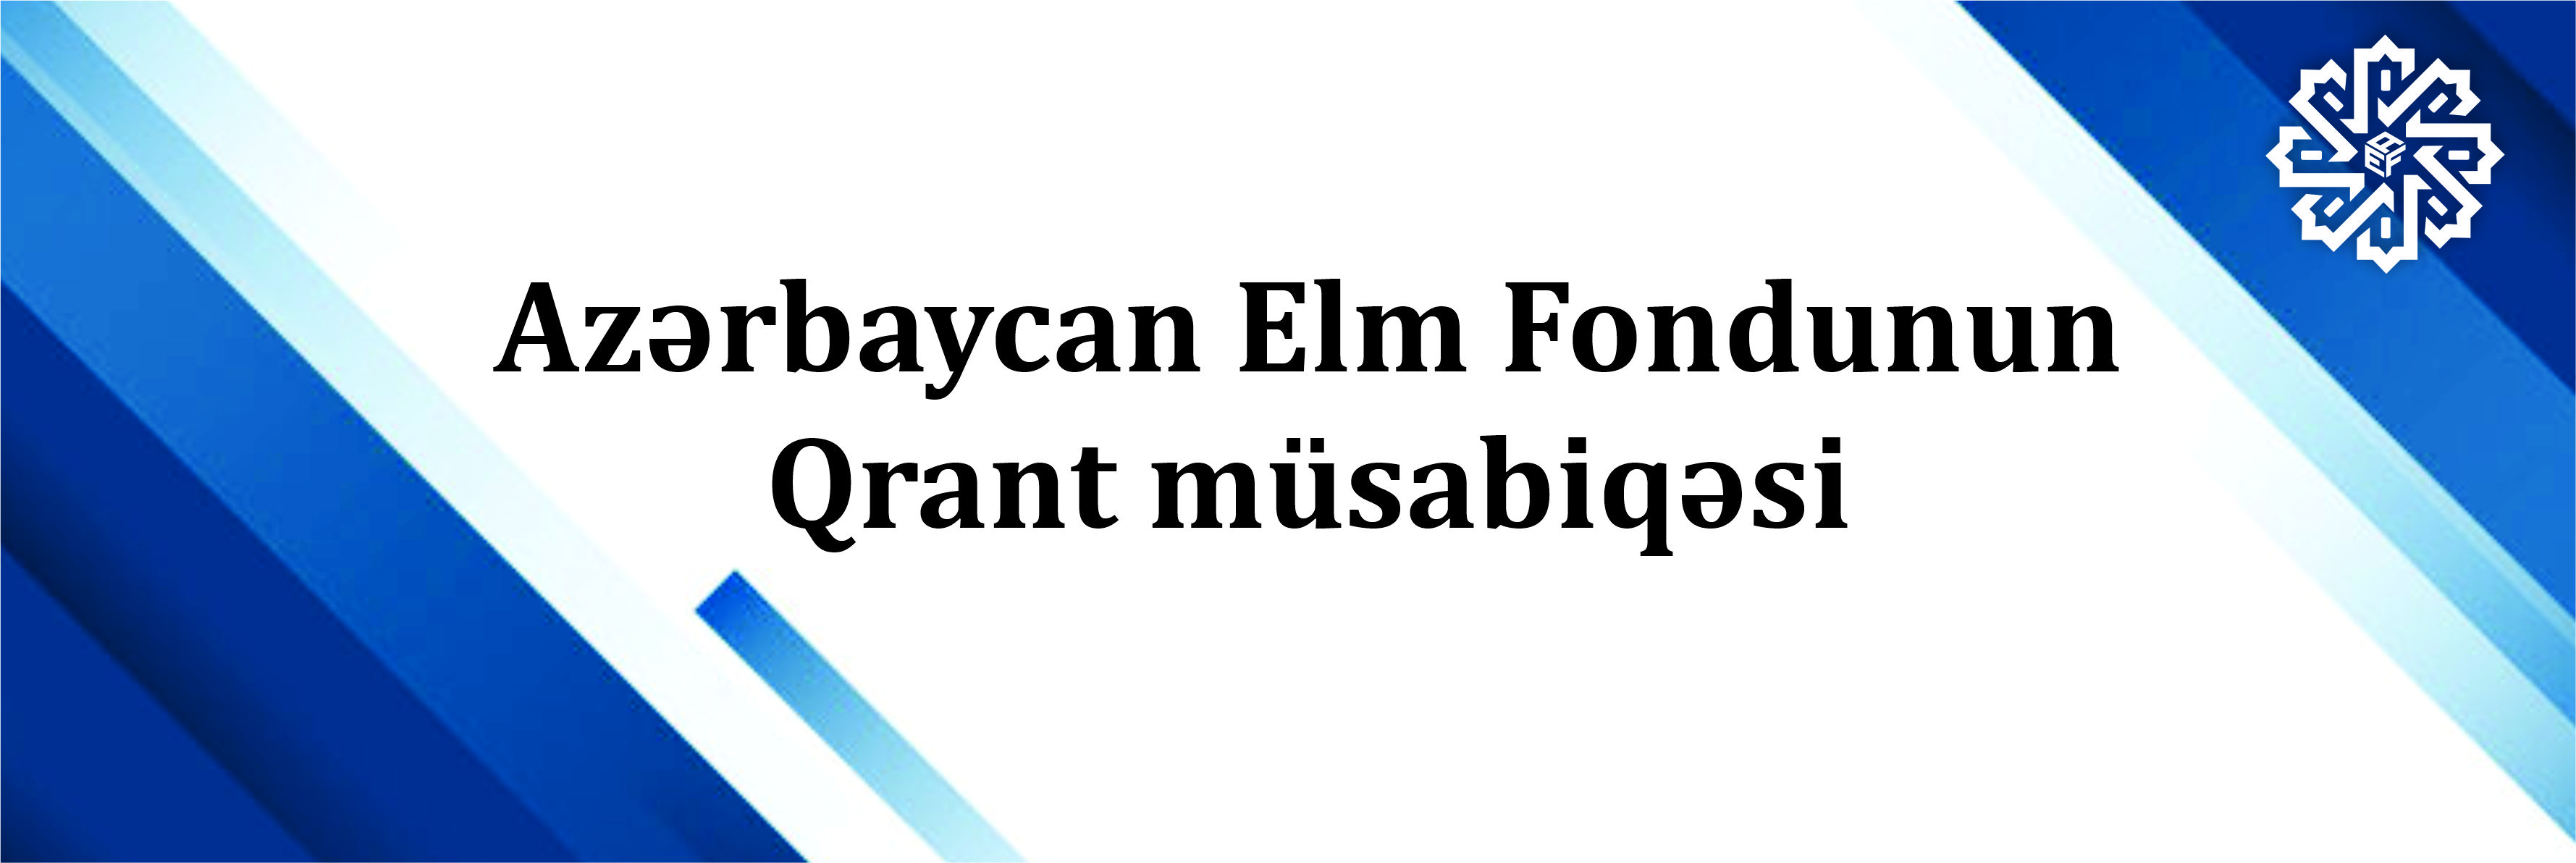 Azərbaycan Elm Fondunun 10-cu “Mobillik qrantı”nın nəticələri elan olunub